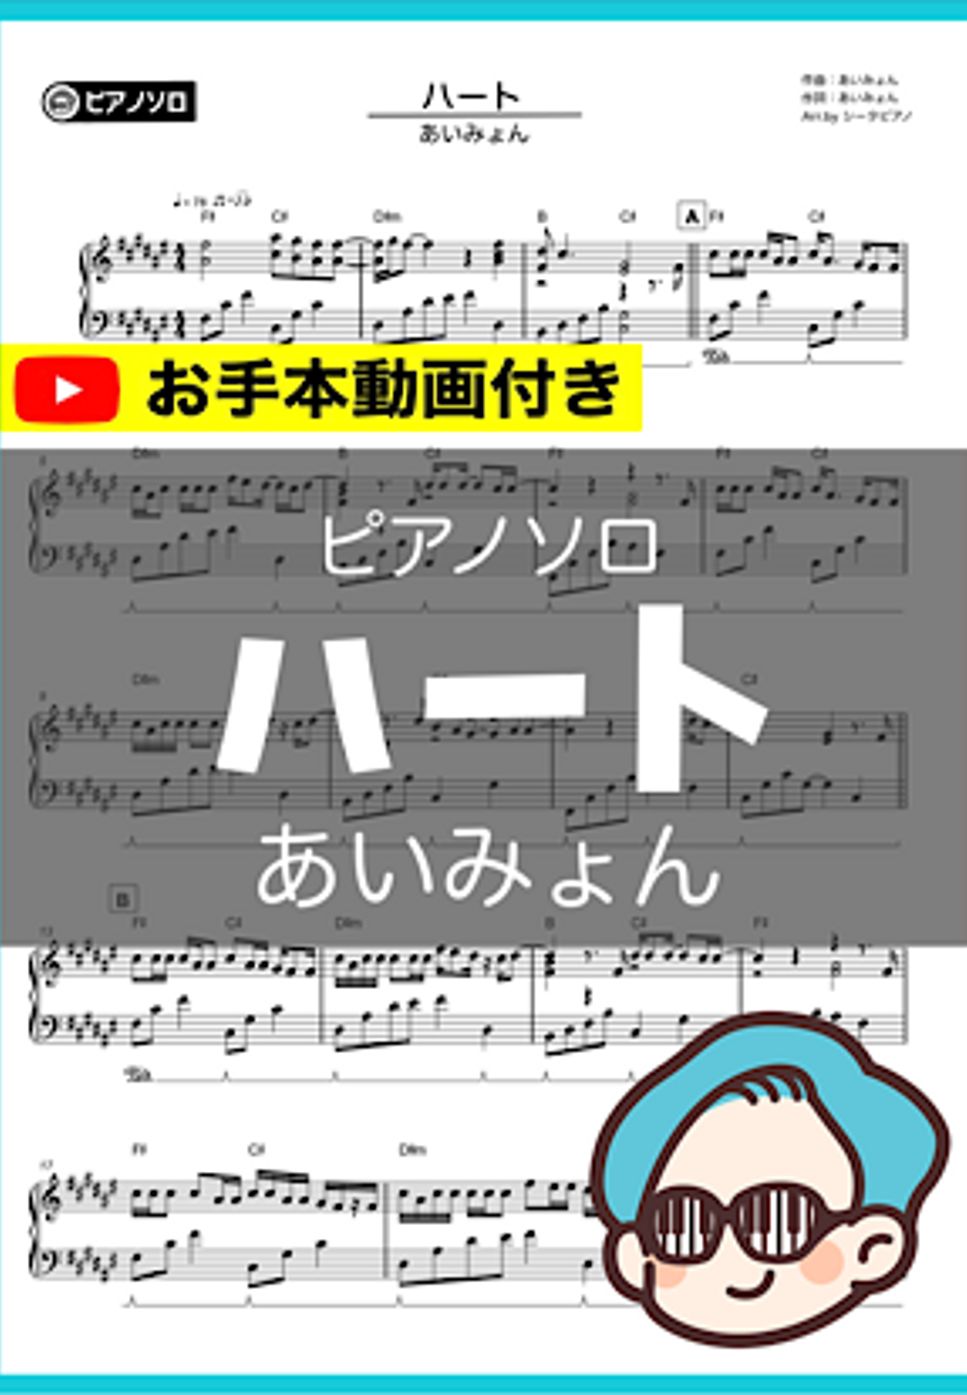 あいみょん - ハート by シータピアノ